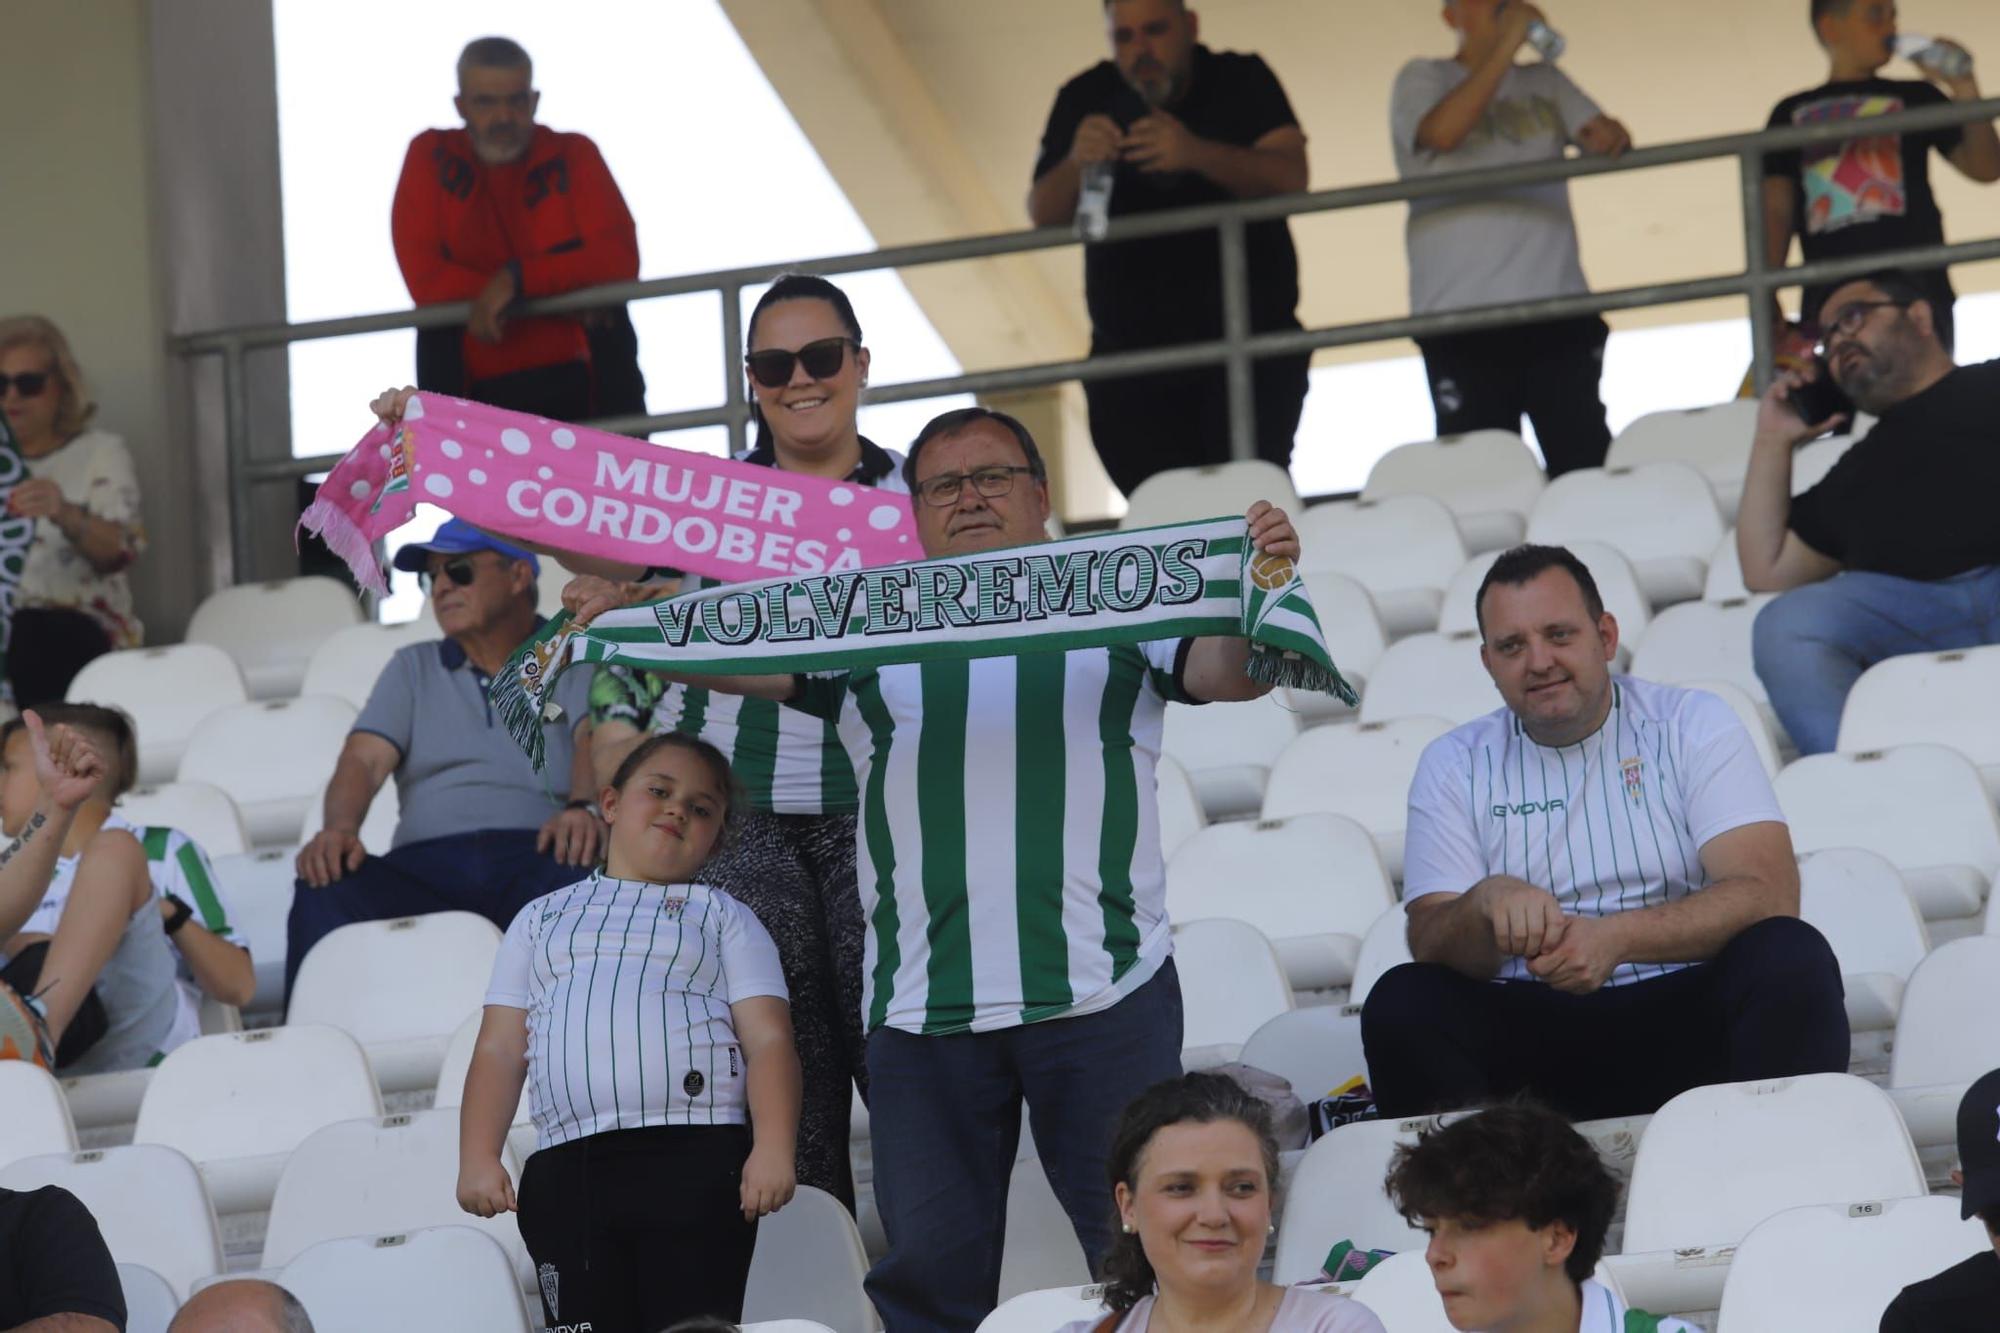 Córdoba CF-Alcoyano: las imágenes de la afición blanquiverde en El Arcángel